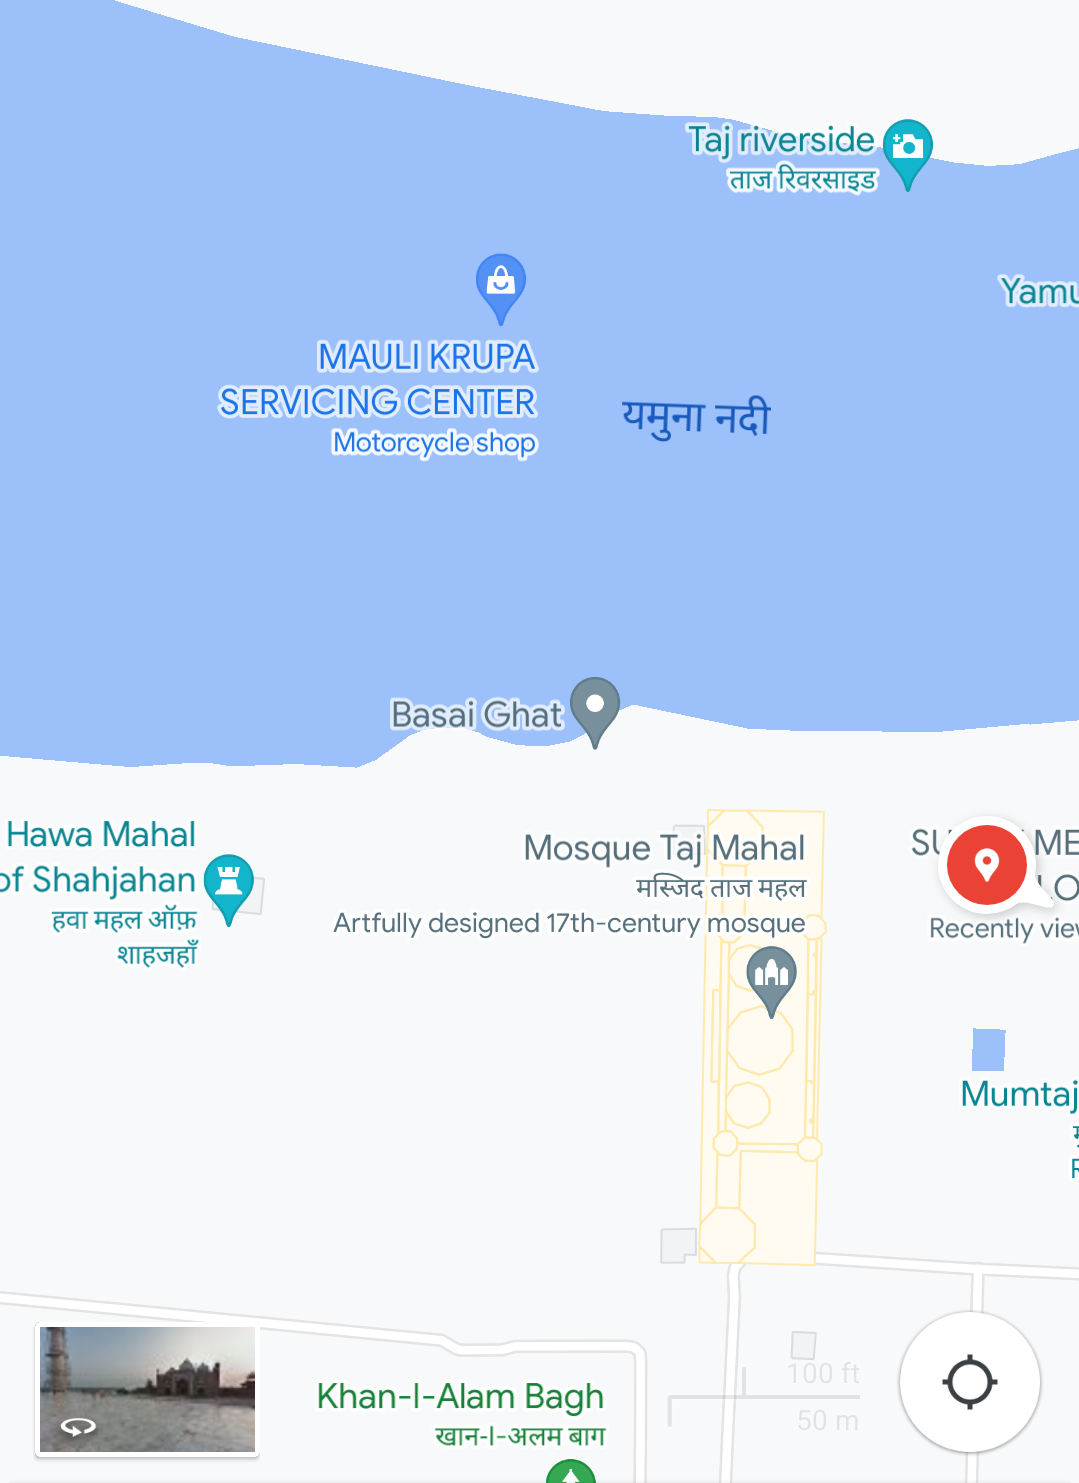 A POI marked in the Yamuna River near Taj Mahal in Google Maps